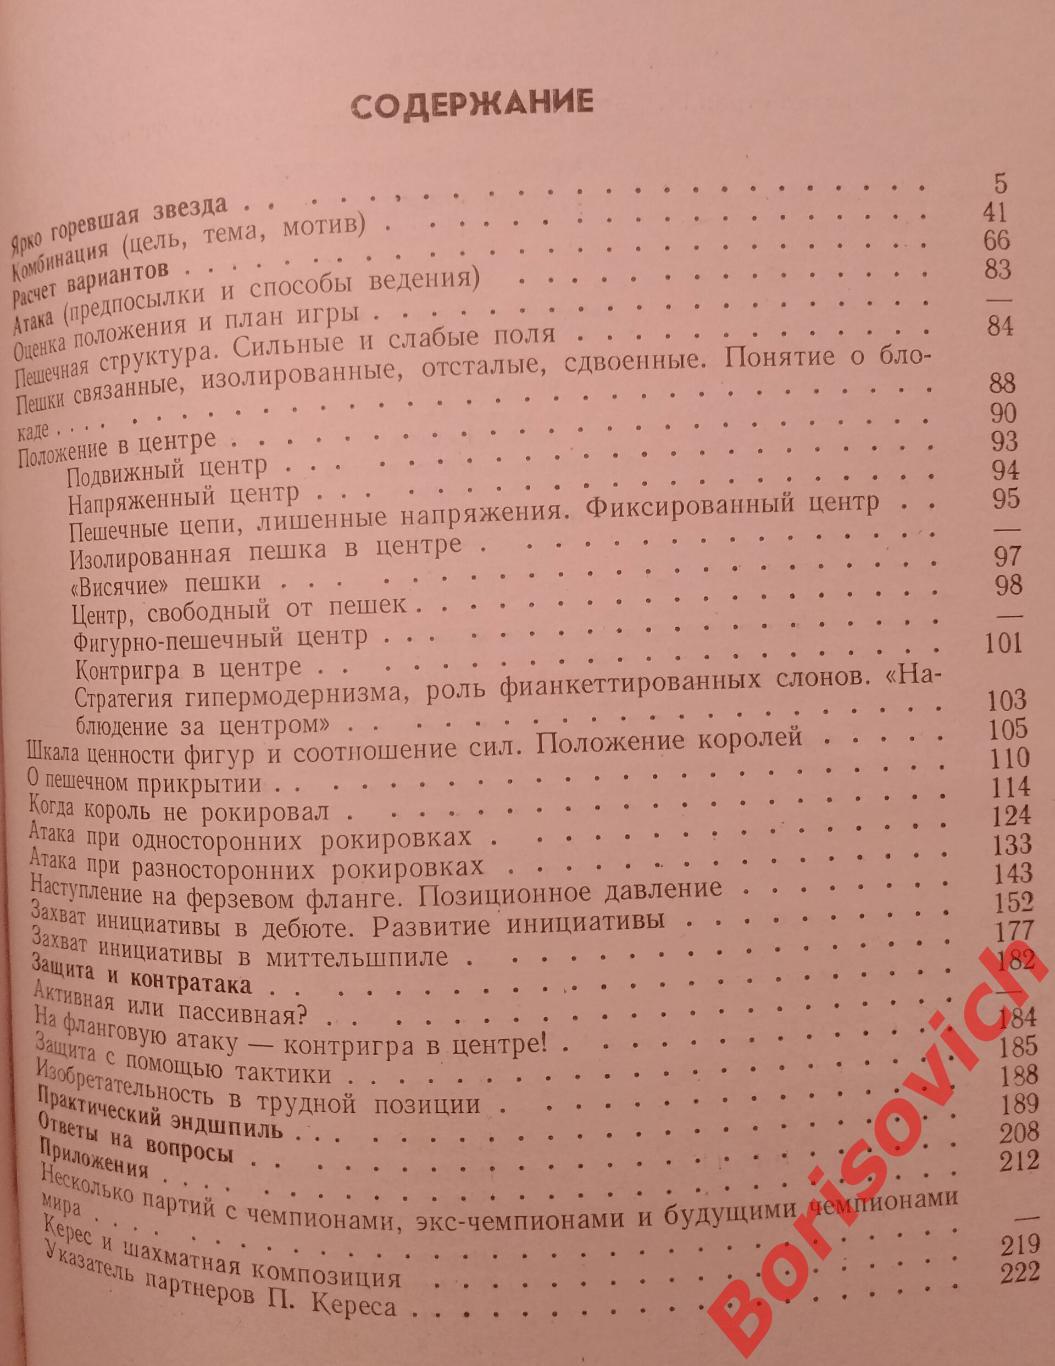 ШАХМАТНЫЙ УНИВЕРСИТЕТ ПАУЛЯ КЕРЕСА ФиС 1982 г 223 страницы 2